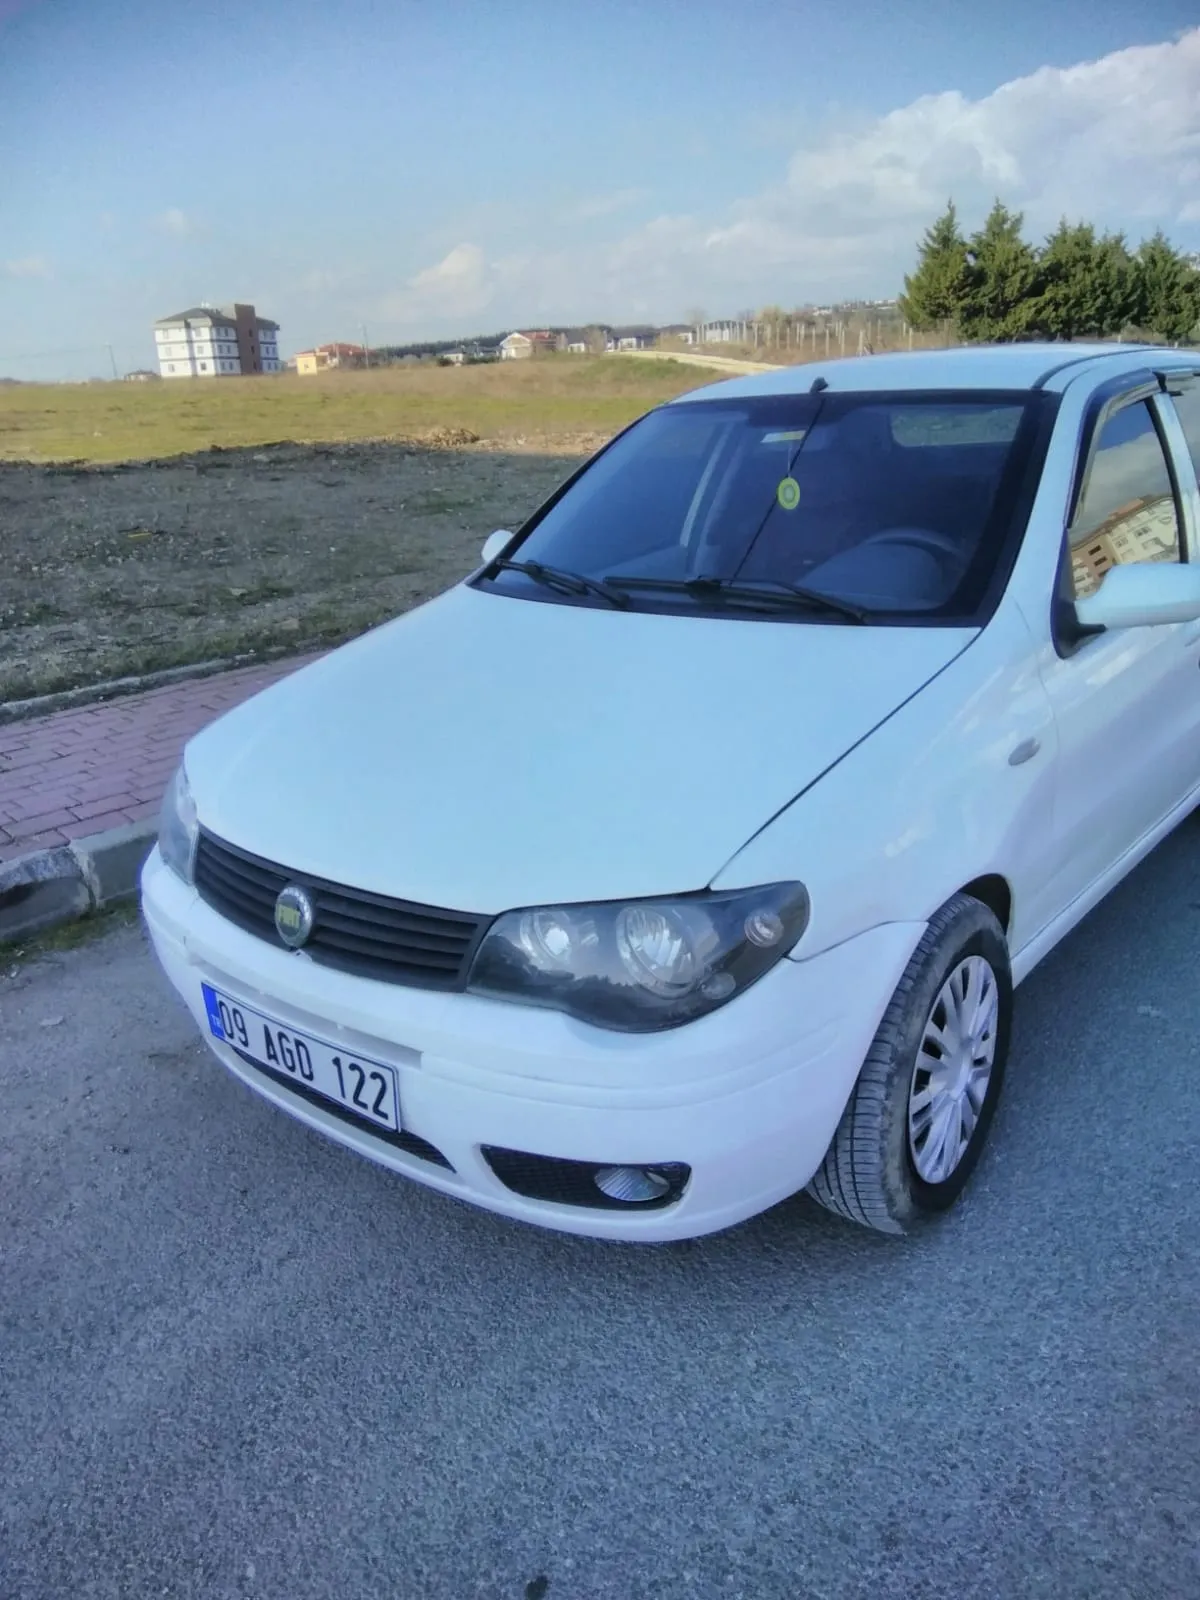 Satılık Fiat Albea 1.3